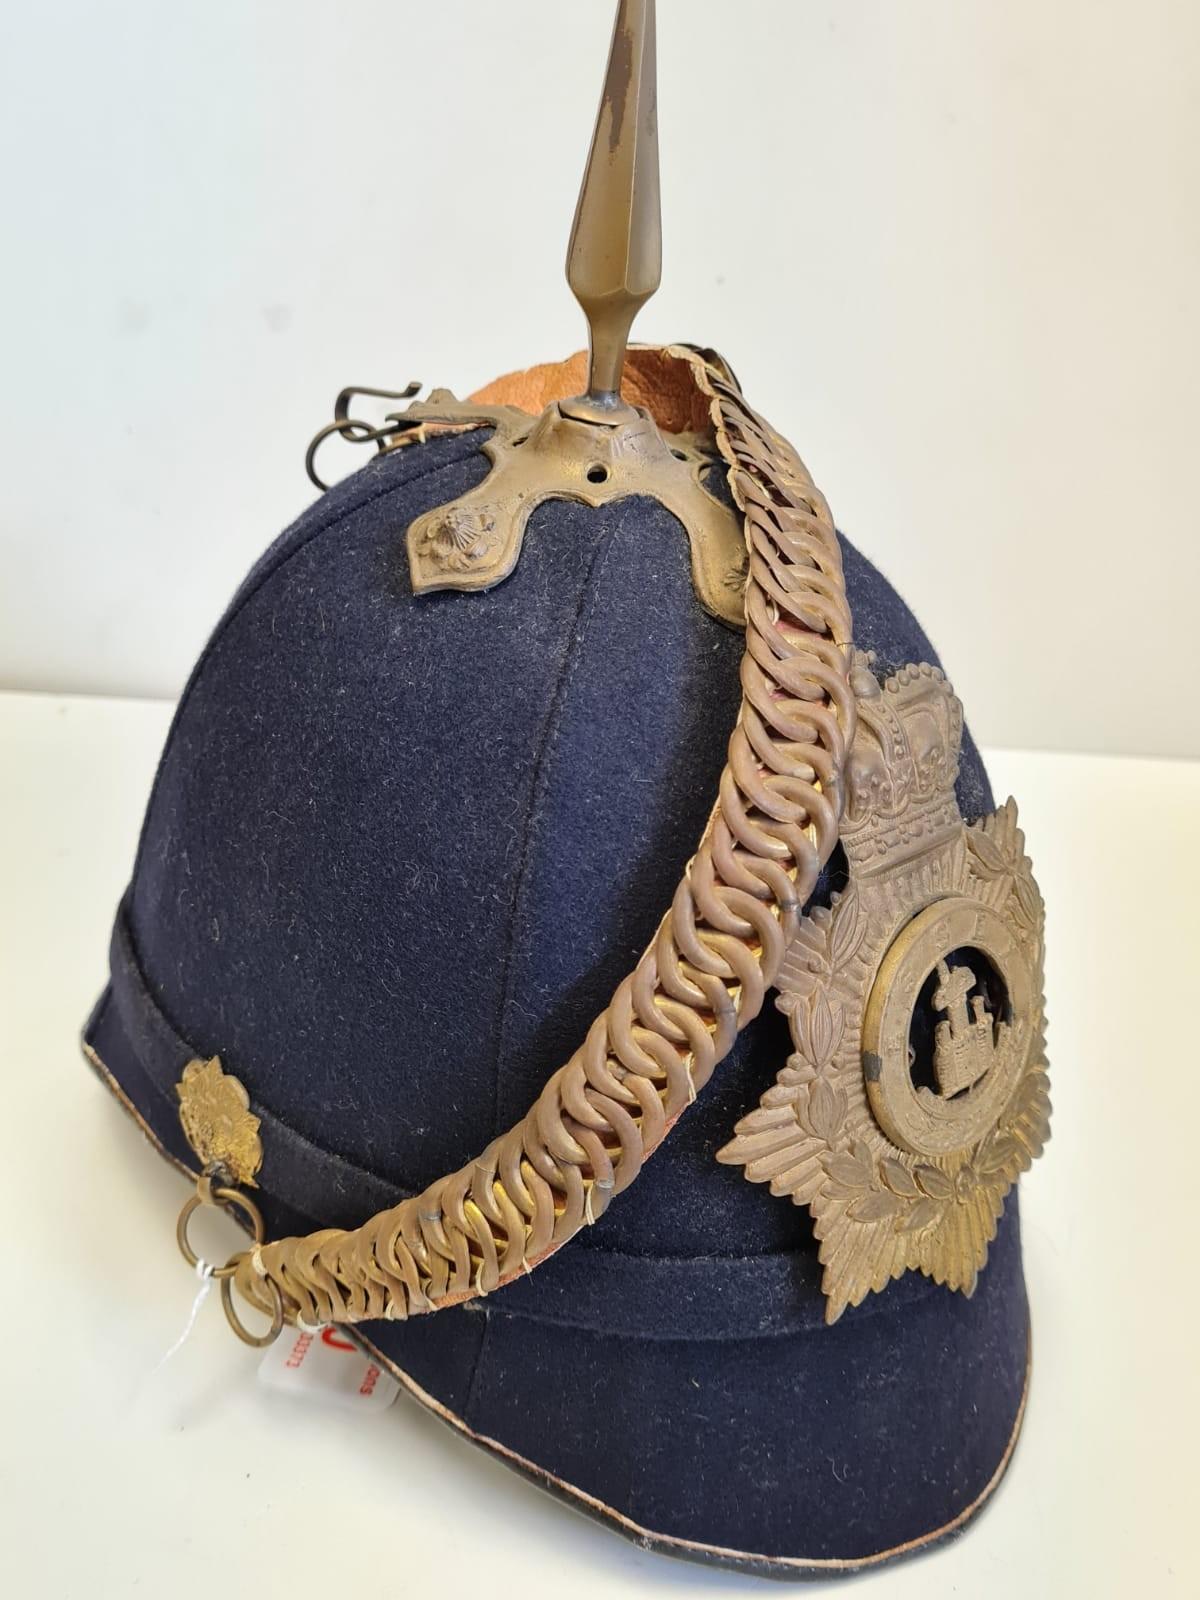 Bluecloth Privates Essex Regment Hat - Image 3 of 6